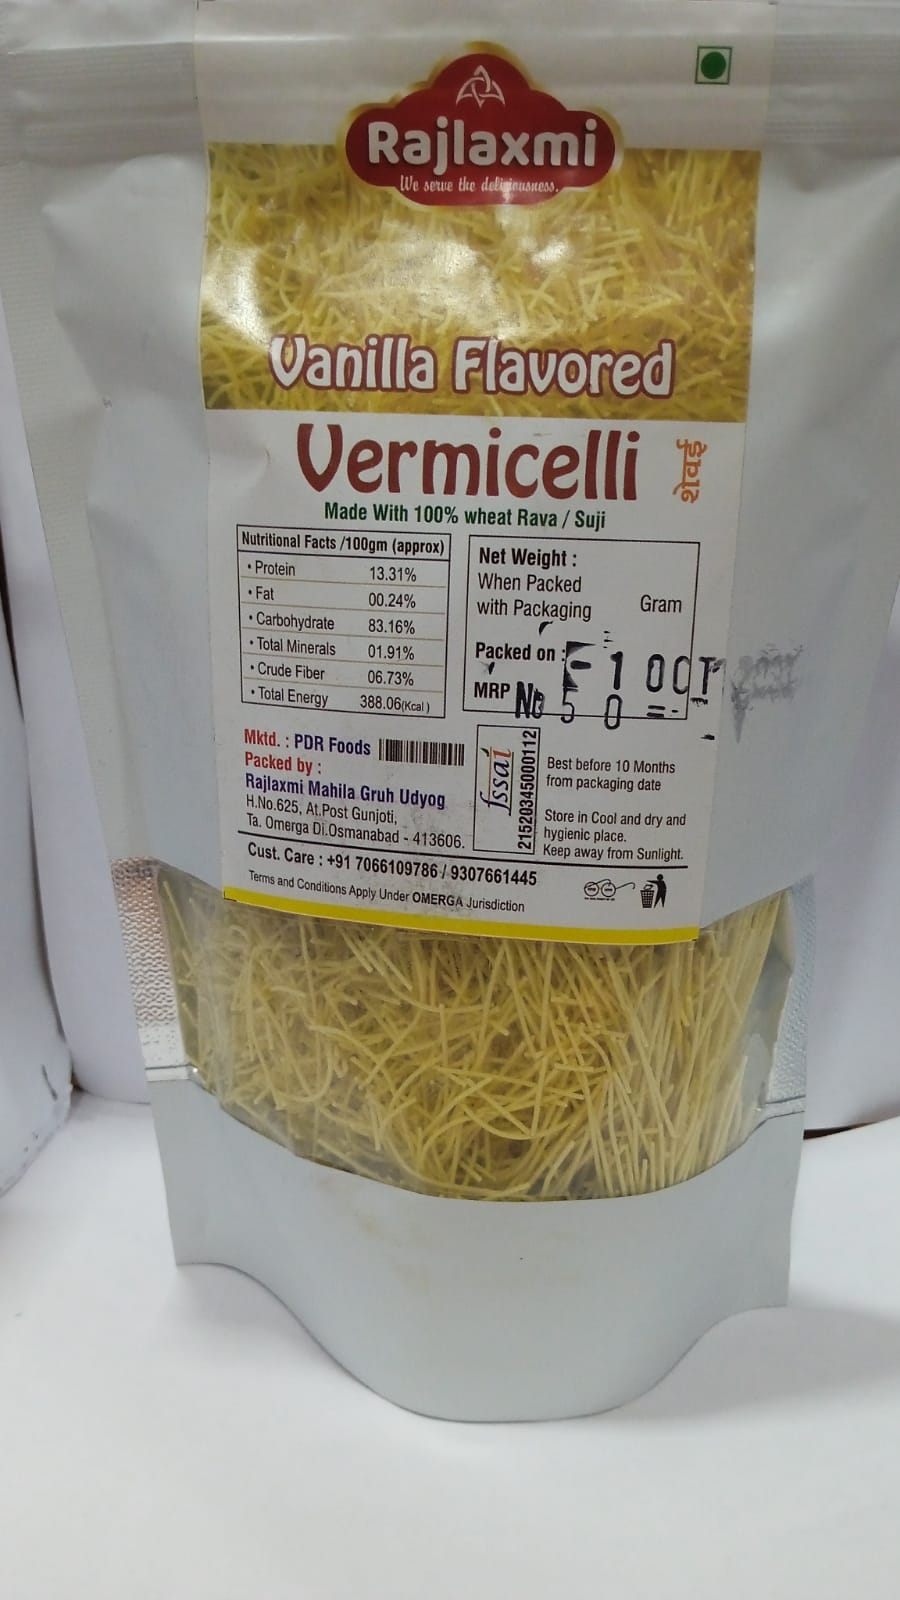 Vanilla flavored vermicelli